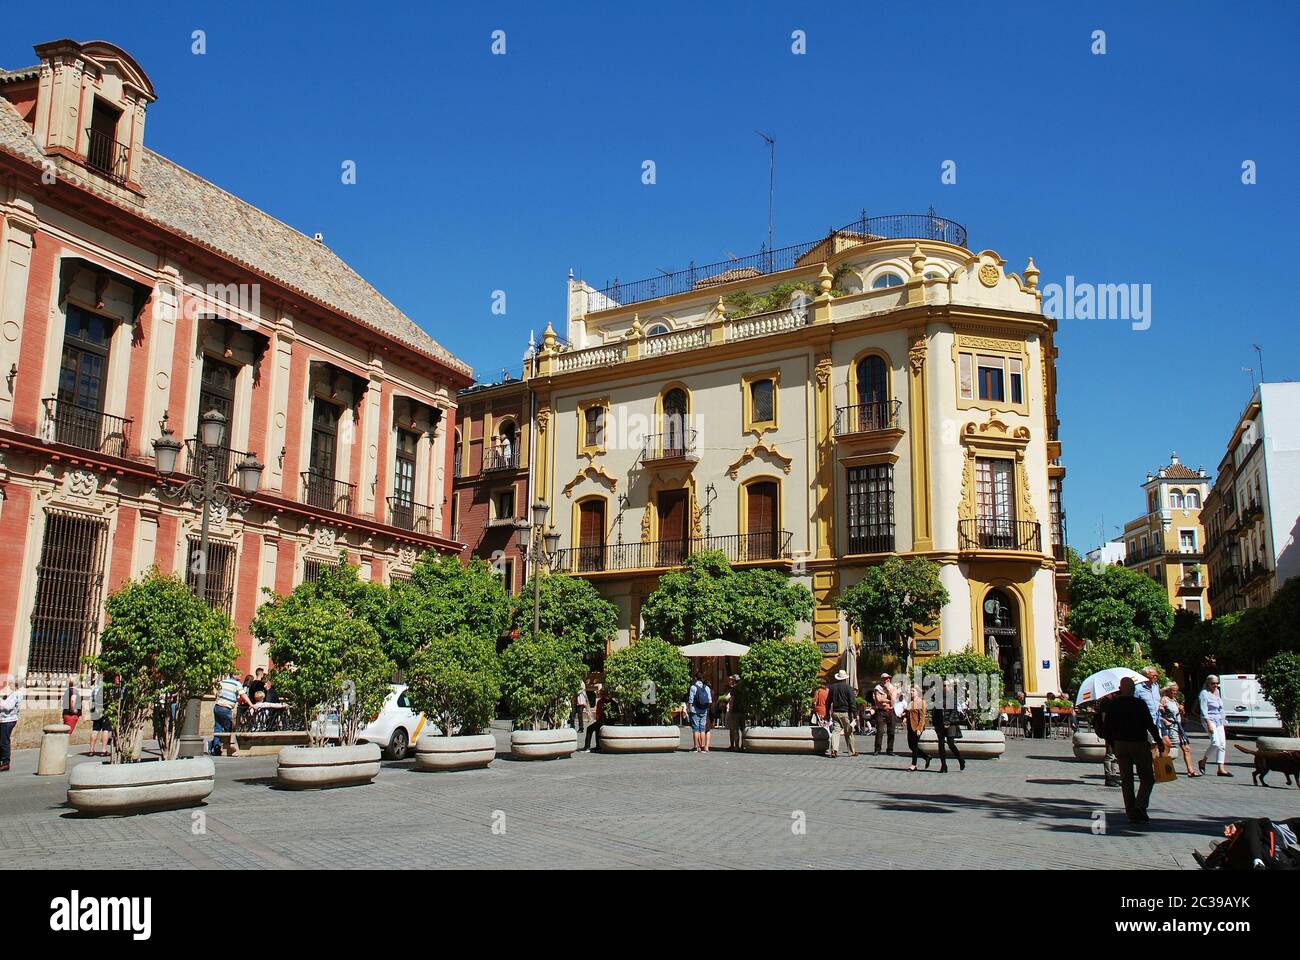 Die Plaza Virgen de los Reyes in Sevilla, Spanien am 3. April 2019. Der historische Platz befindet sich im Stadtteil Santa Cruz der Stadt. Stockfoto